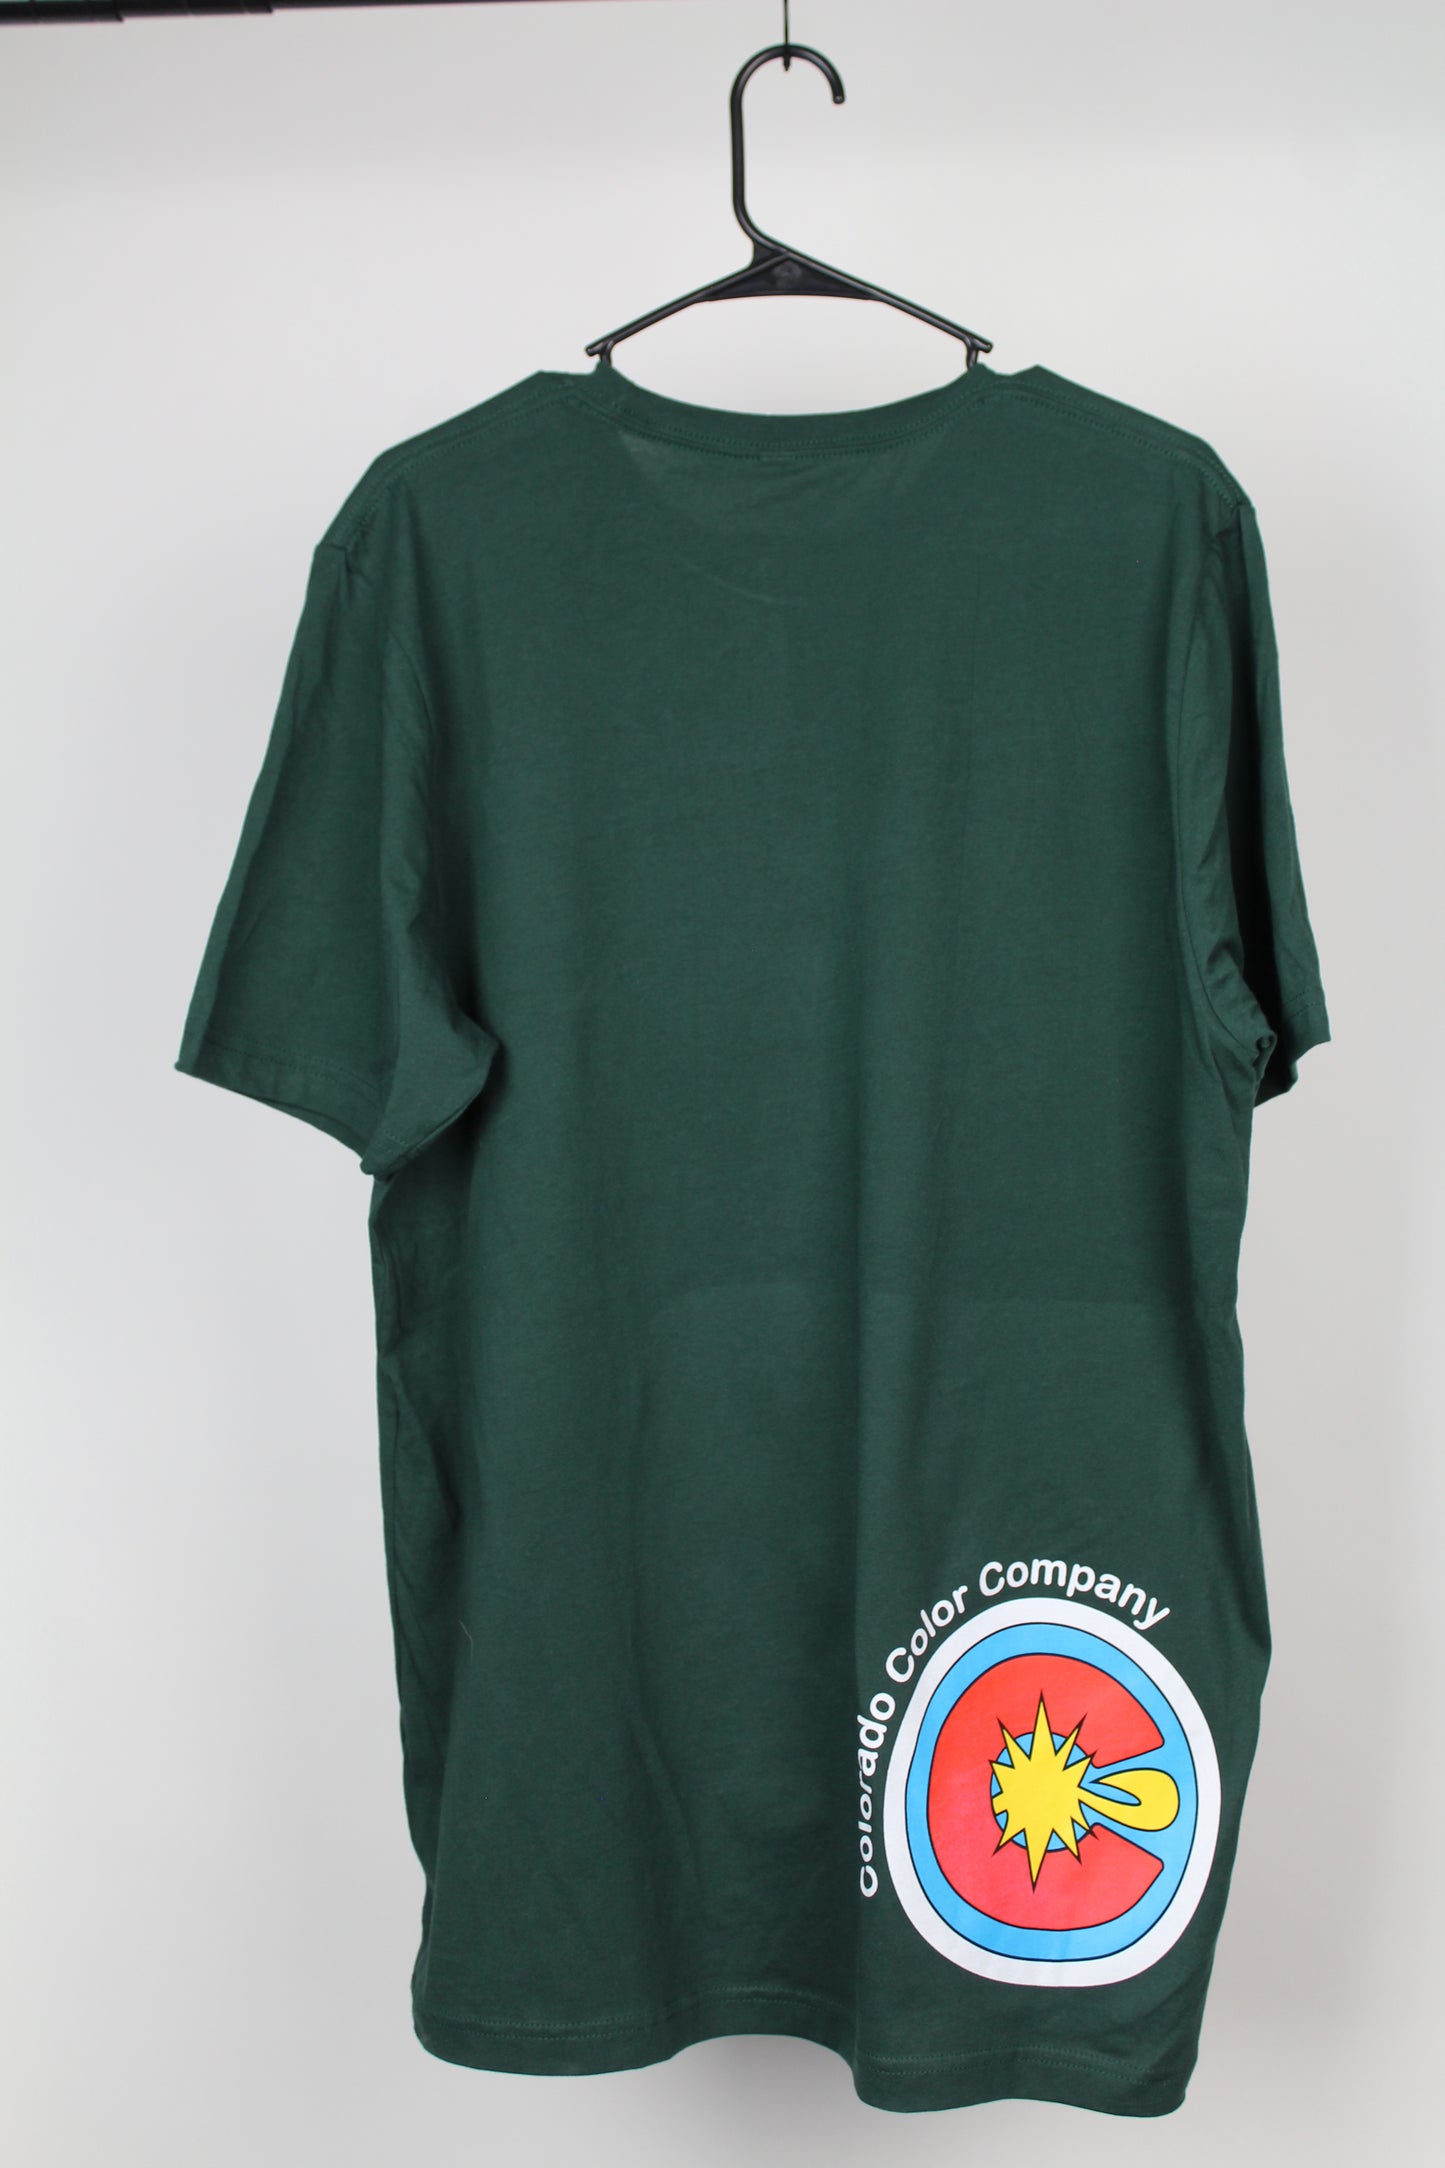 Camiseta verde Colorado Color Company